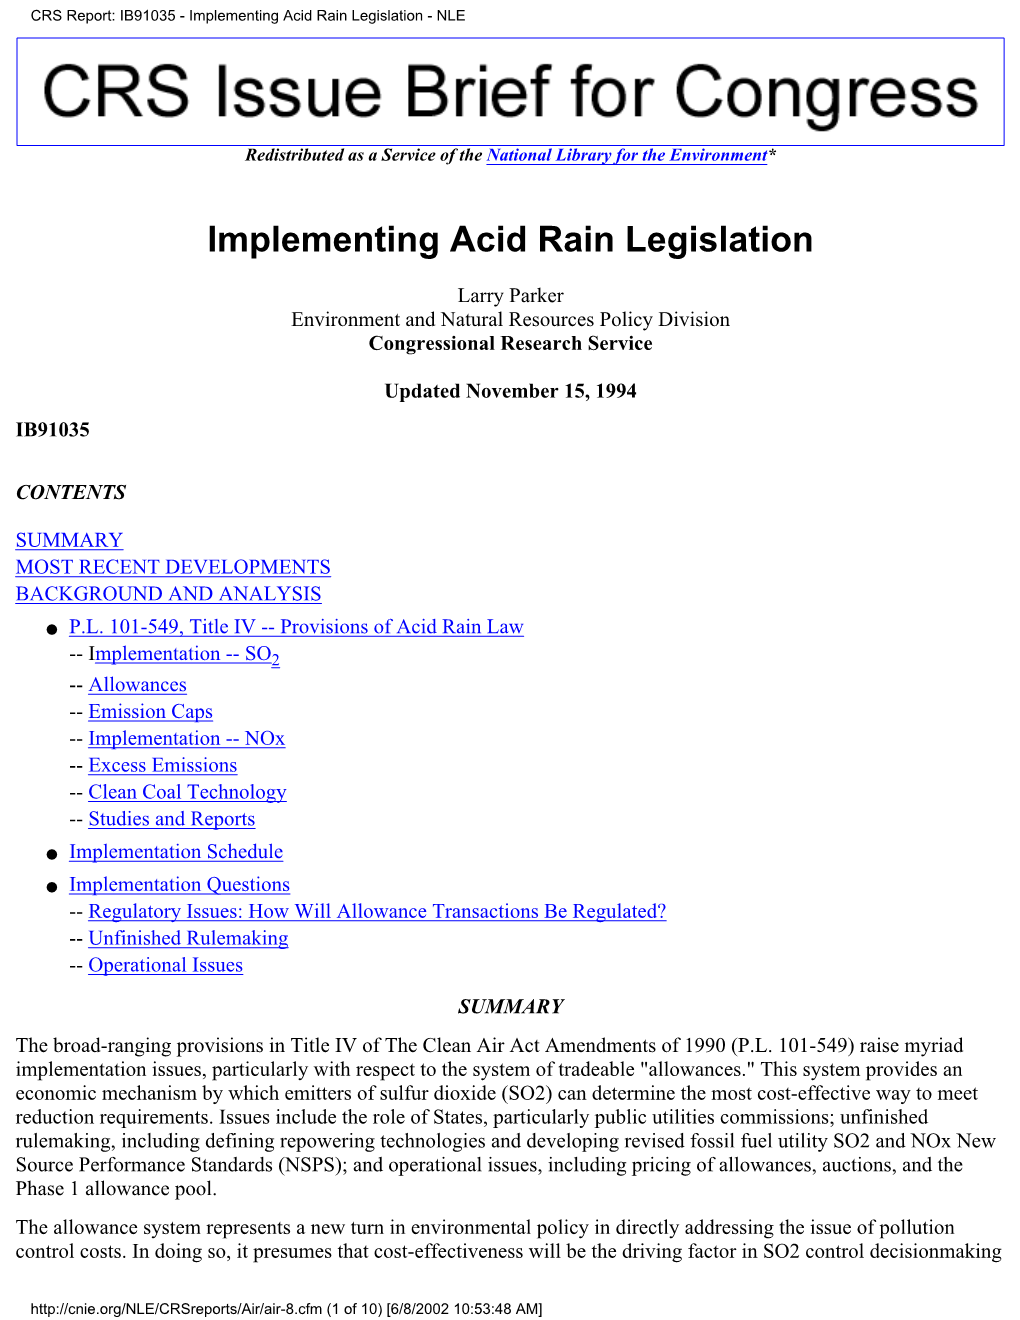 Implementing Acid Rain Legislation - NLE